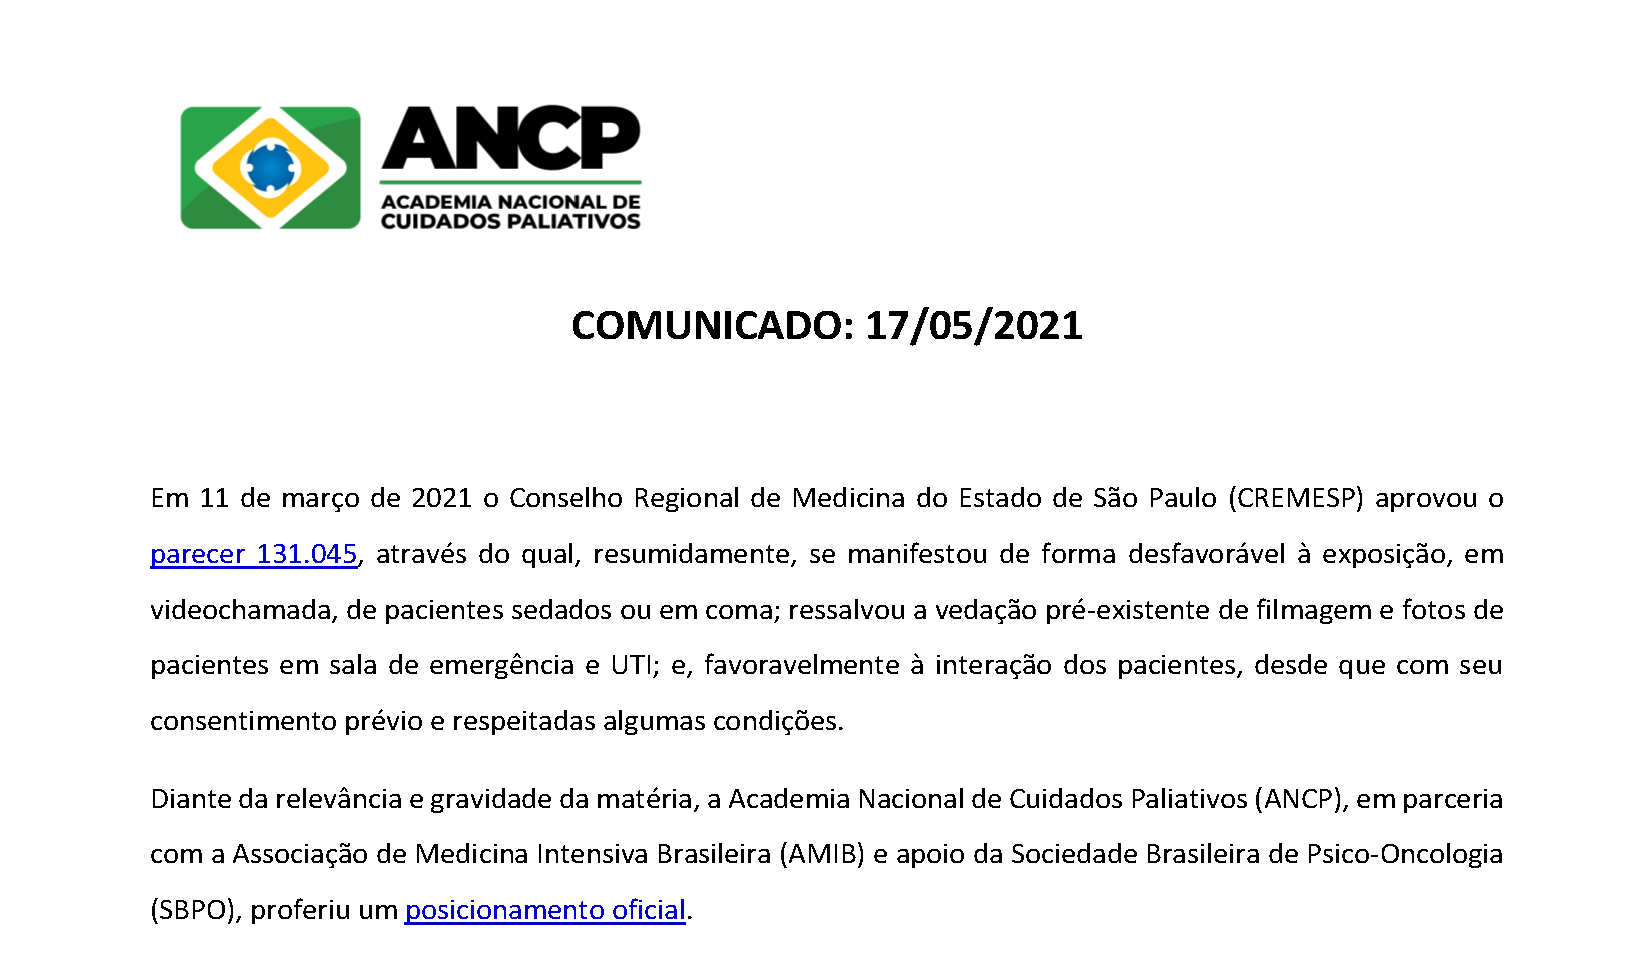 ANCP e ANCP-SP publicam comunicado referente ao CREMESP